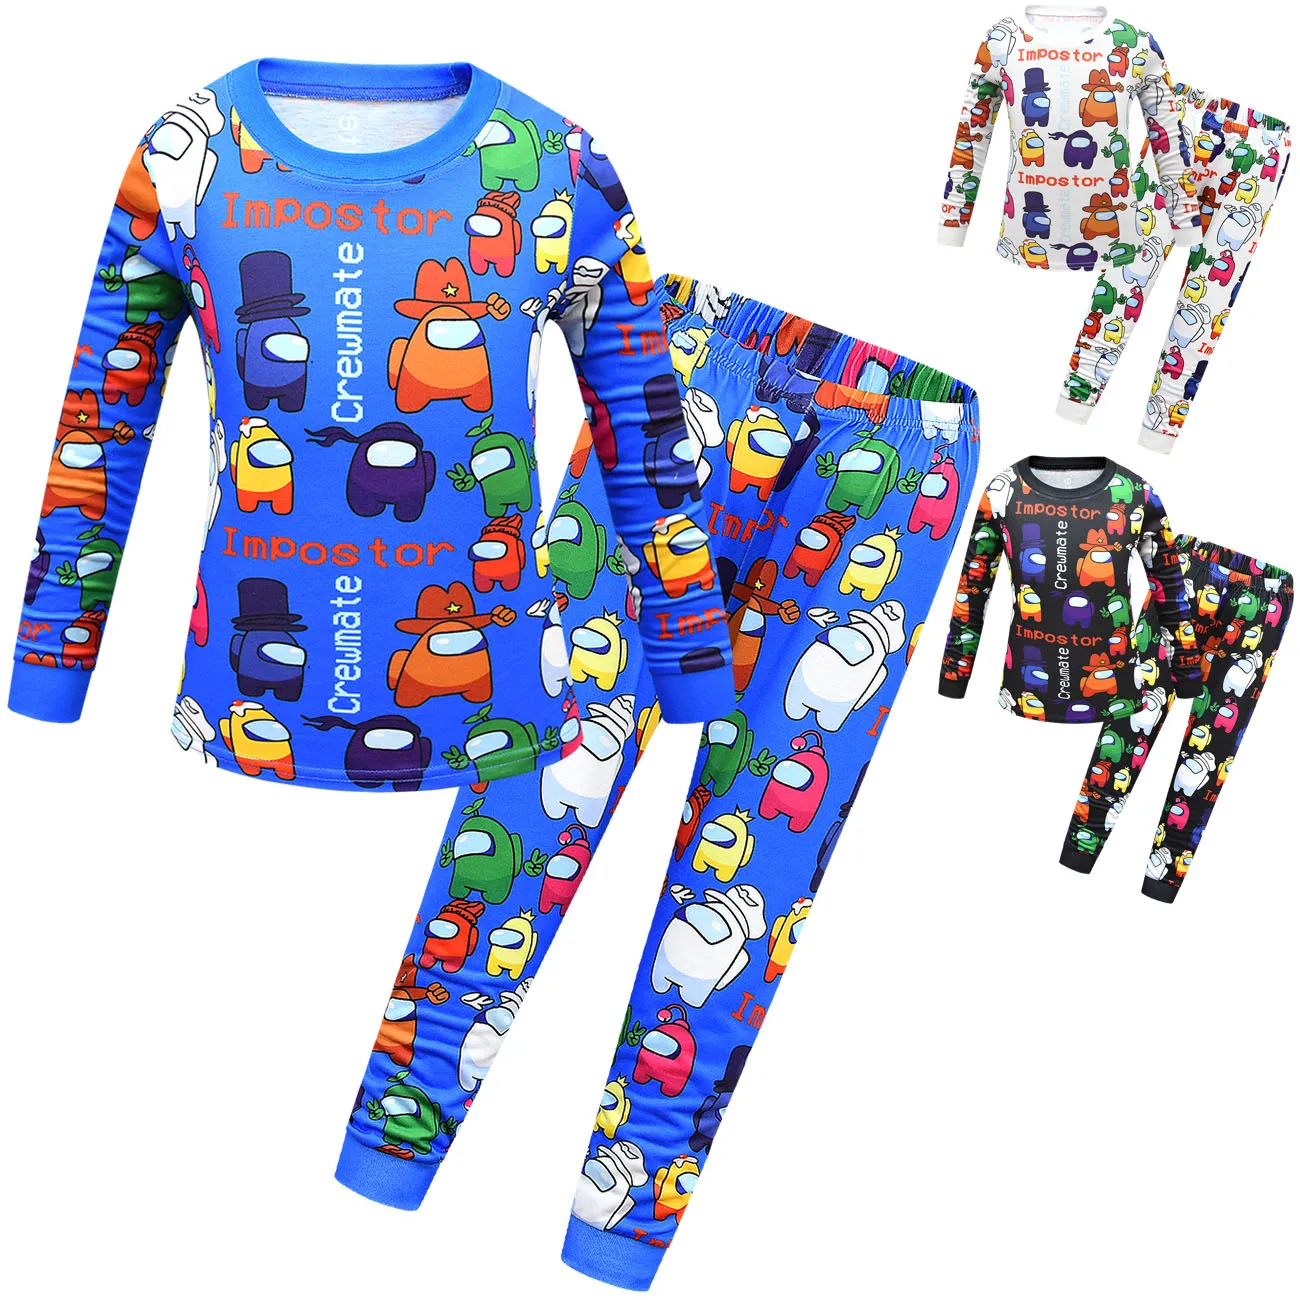 Игры Детская Пижама детская одежда для сна Детские пижамные комплекты для мальчиков, пижама, пижамный комплект, спальный костюм для детей, одежда для сна из хлопка, одежда для мальчиков Одежда для детей